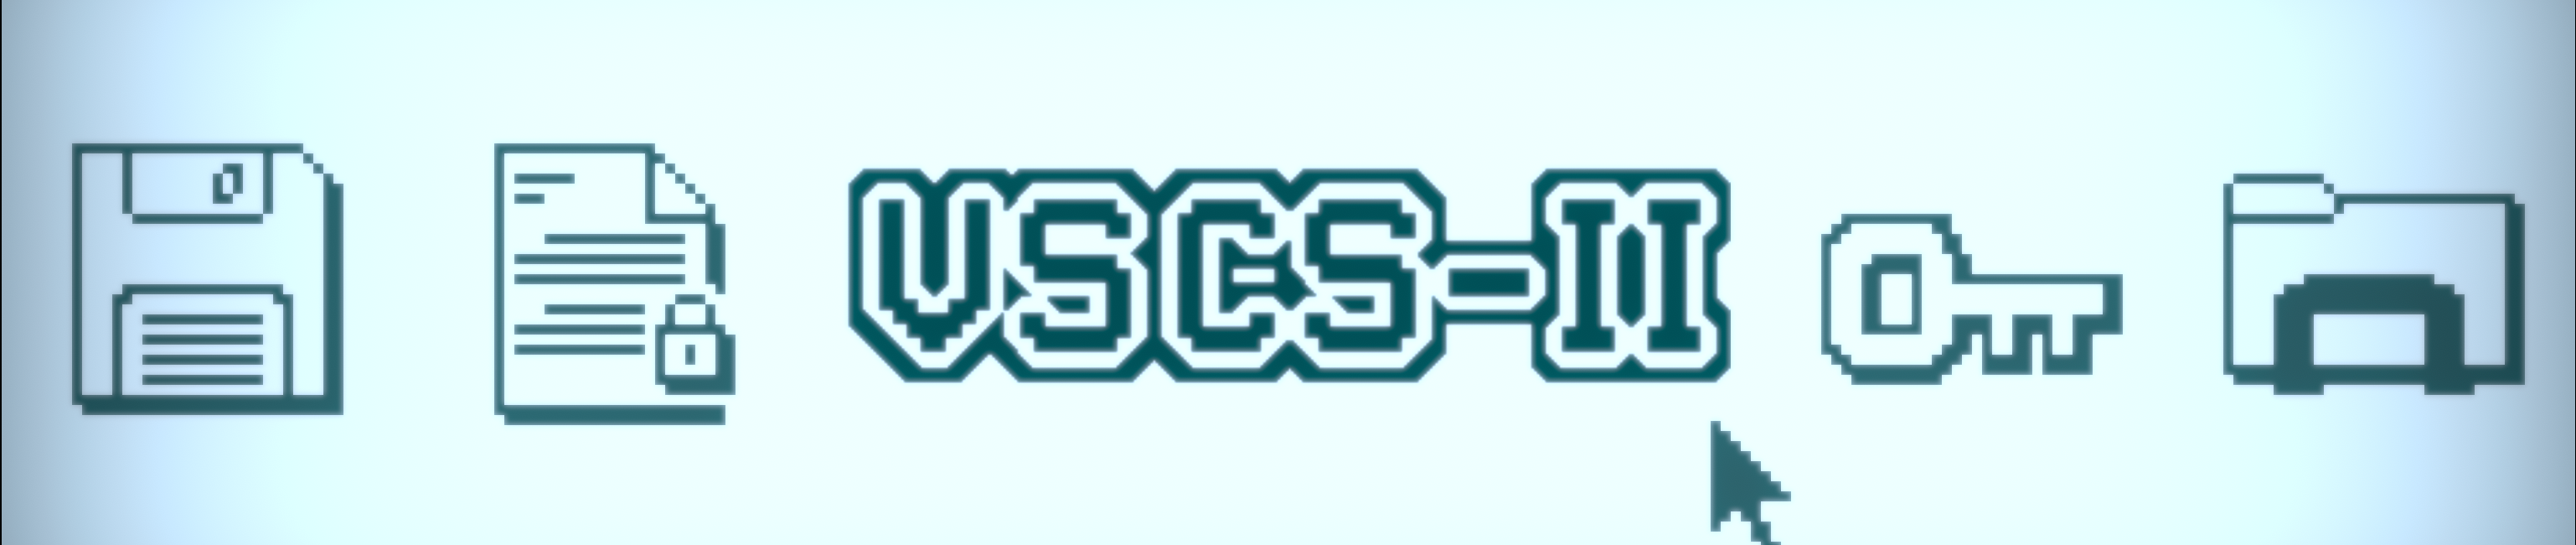 VSCS-II